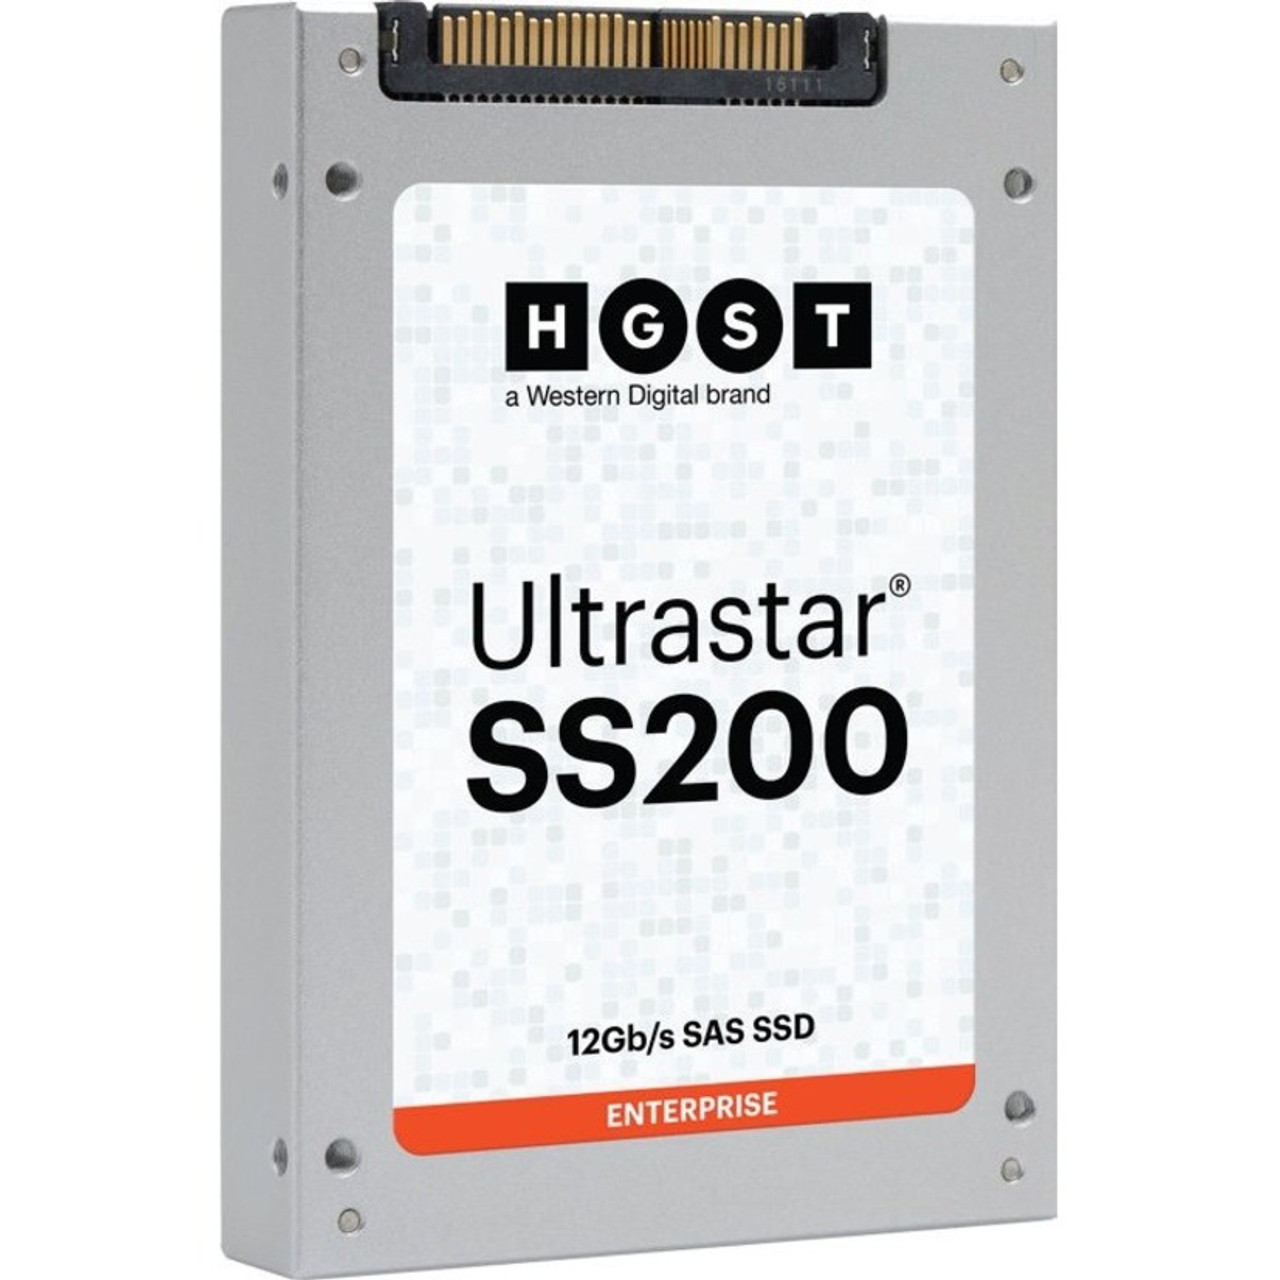 HGST Ultrastar SS200 SDLL1CLR-016T-CAA1 1.60 TB Solid State Drive